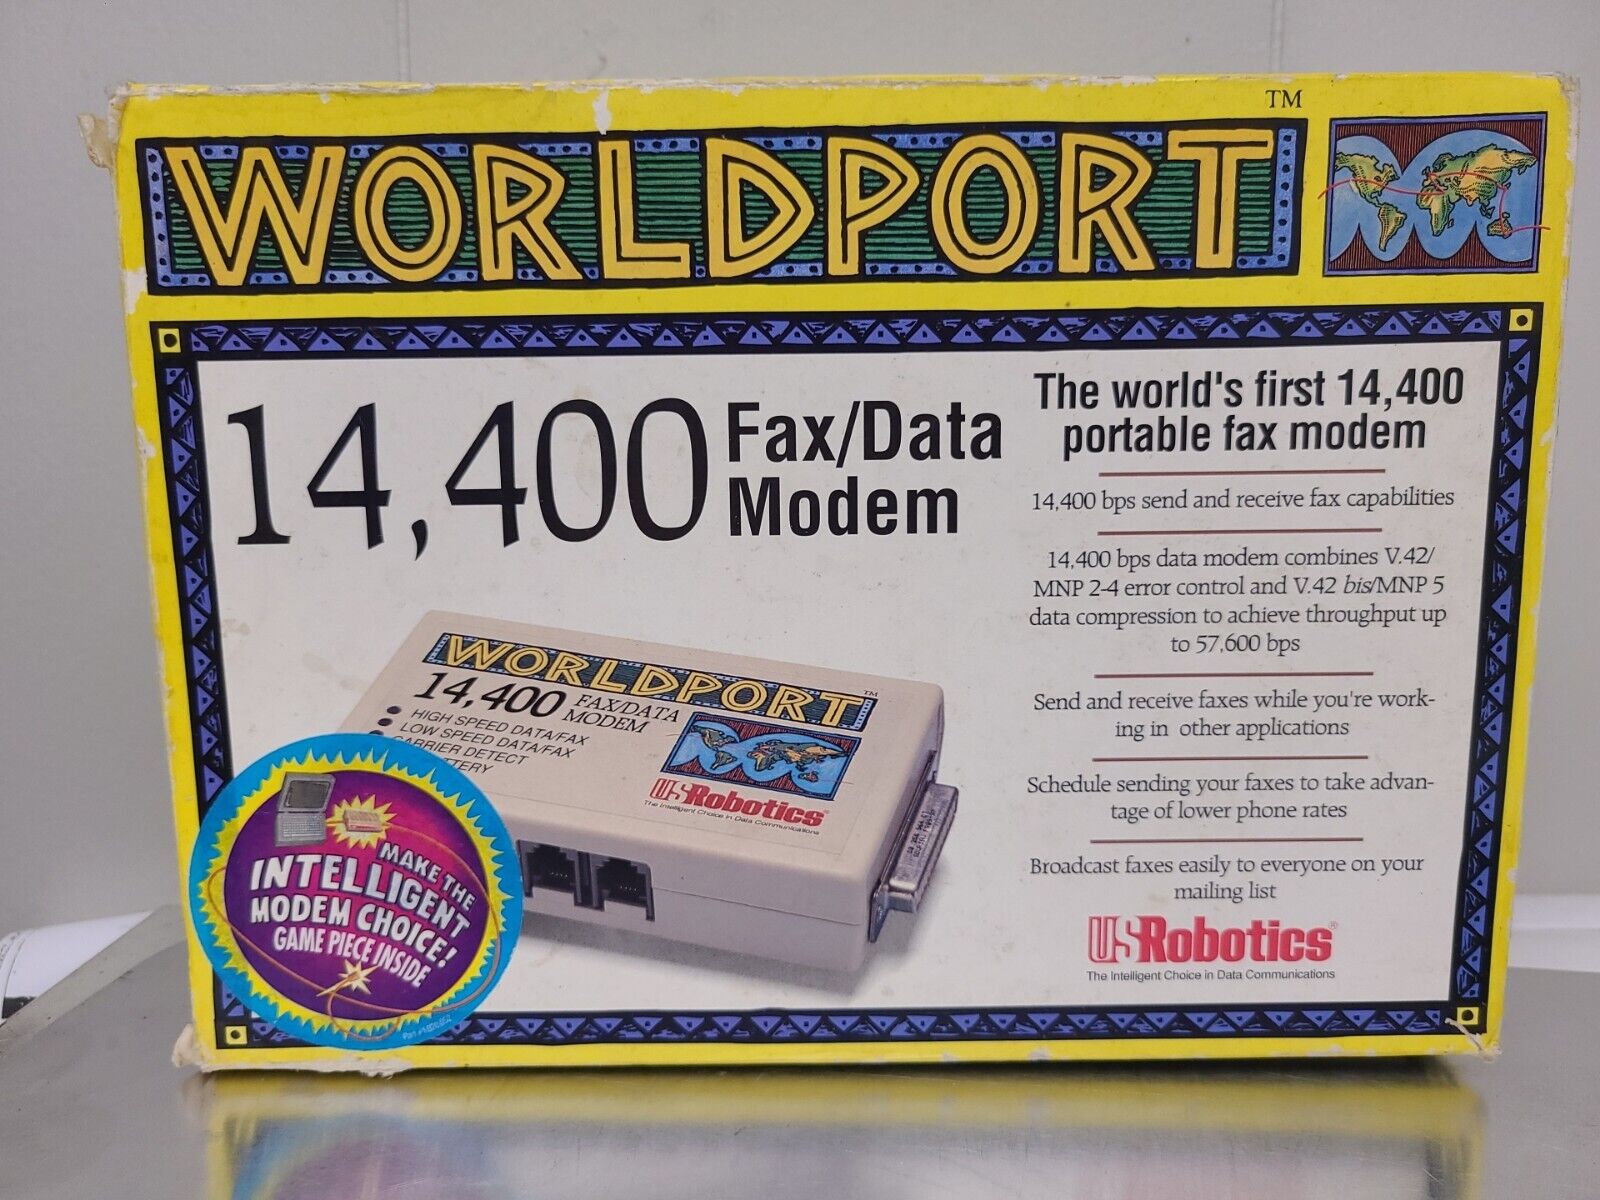 WorldPort 14,400 Fax/Data Modem, The World 1St Portable Fax Modem